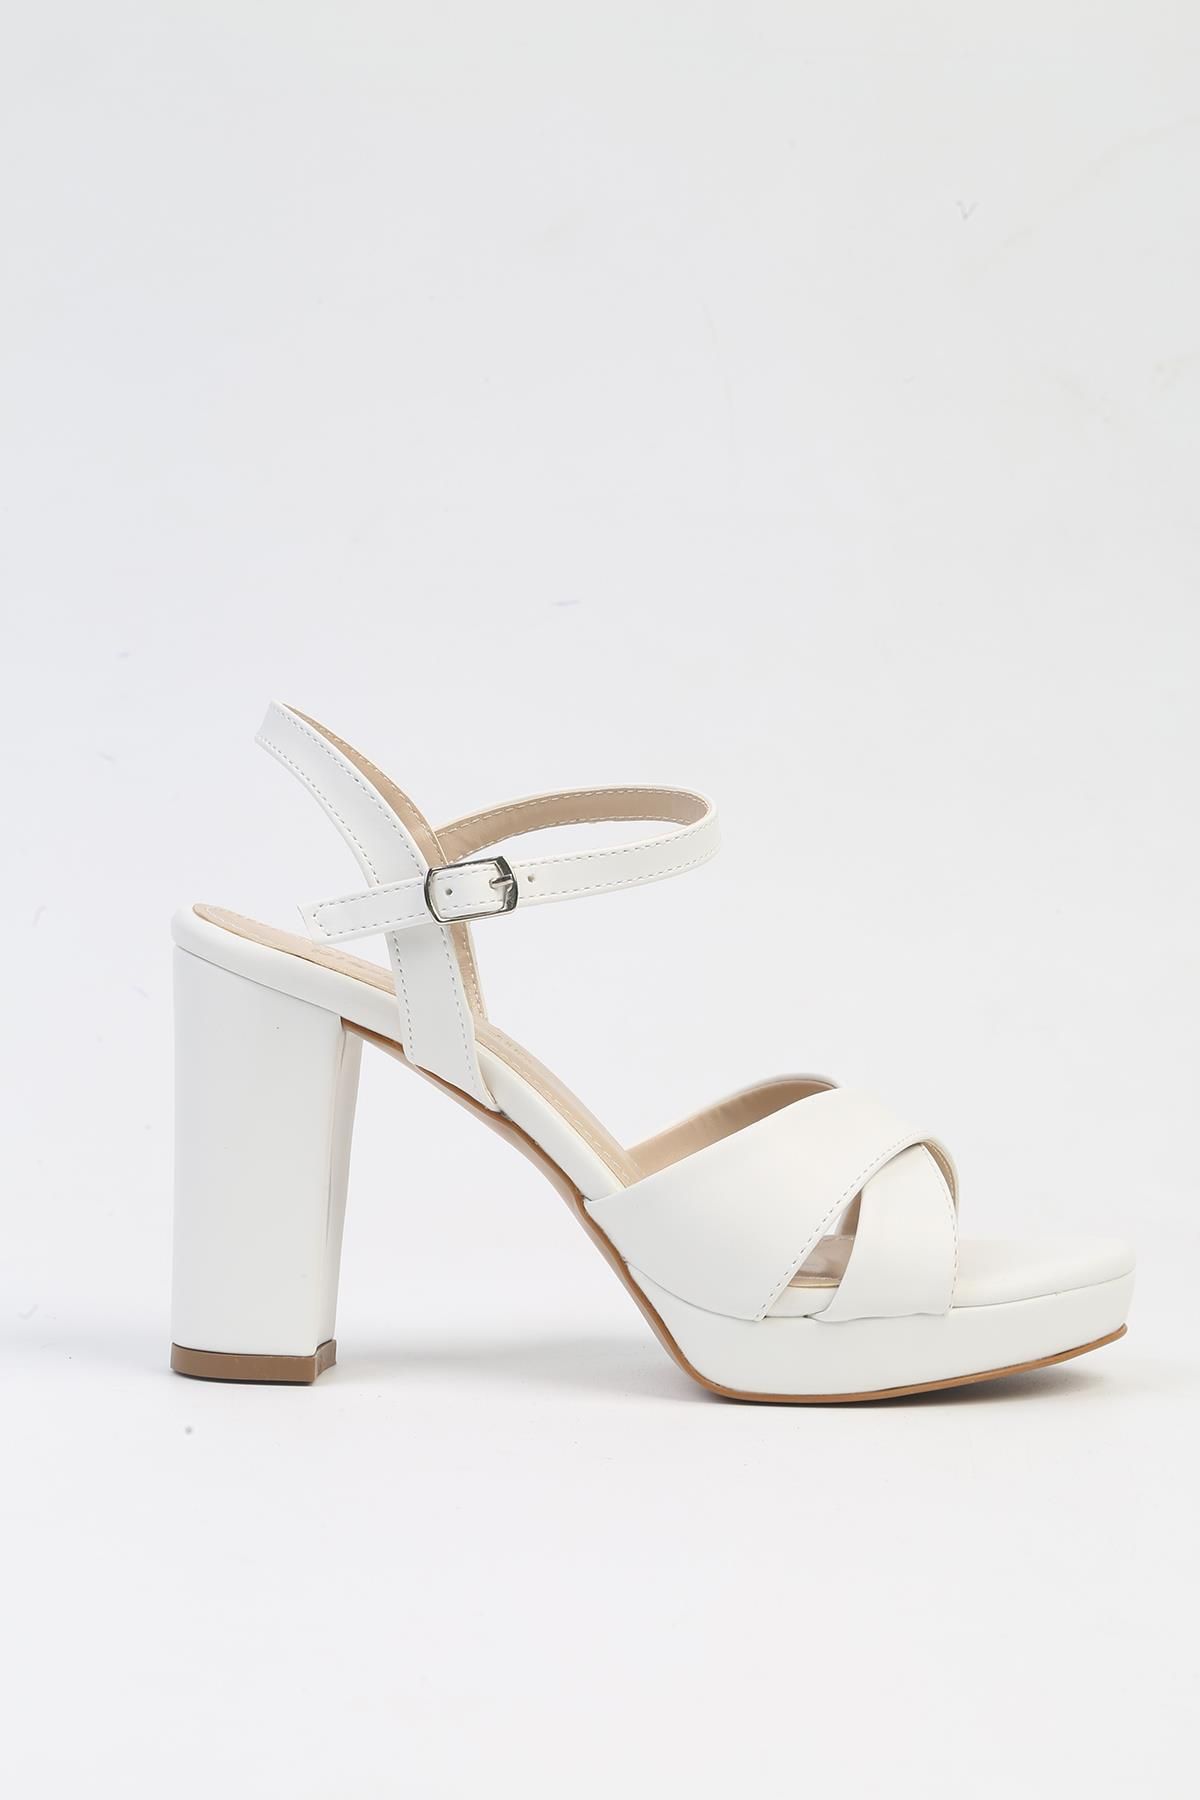 Pierre Cardin ® | PC-52371-3822 Beyaz Cilt-Kadın Topuklu Ayakkabı